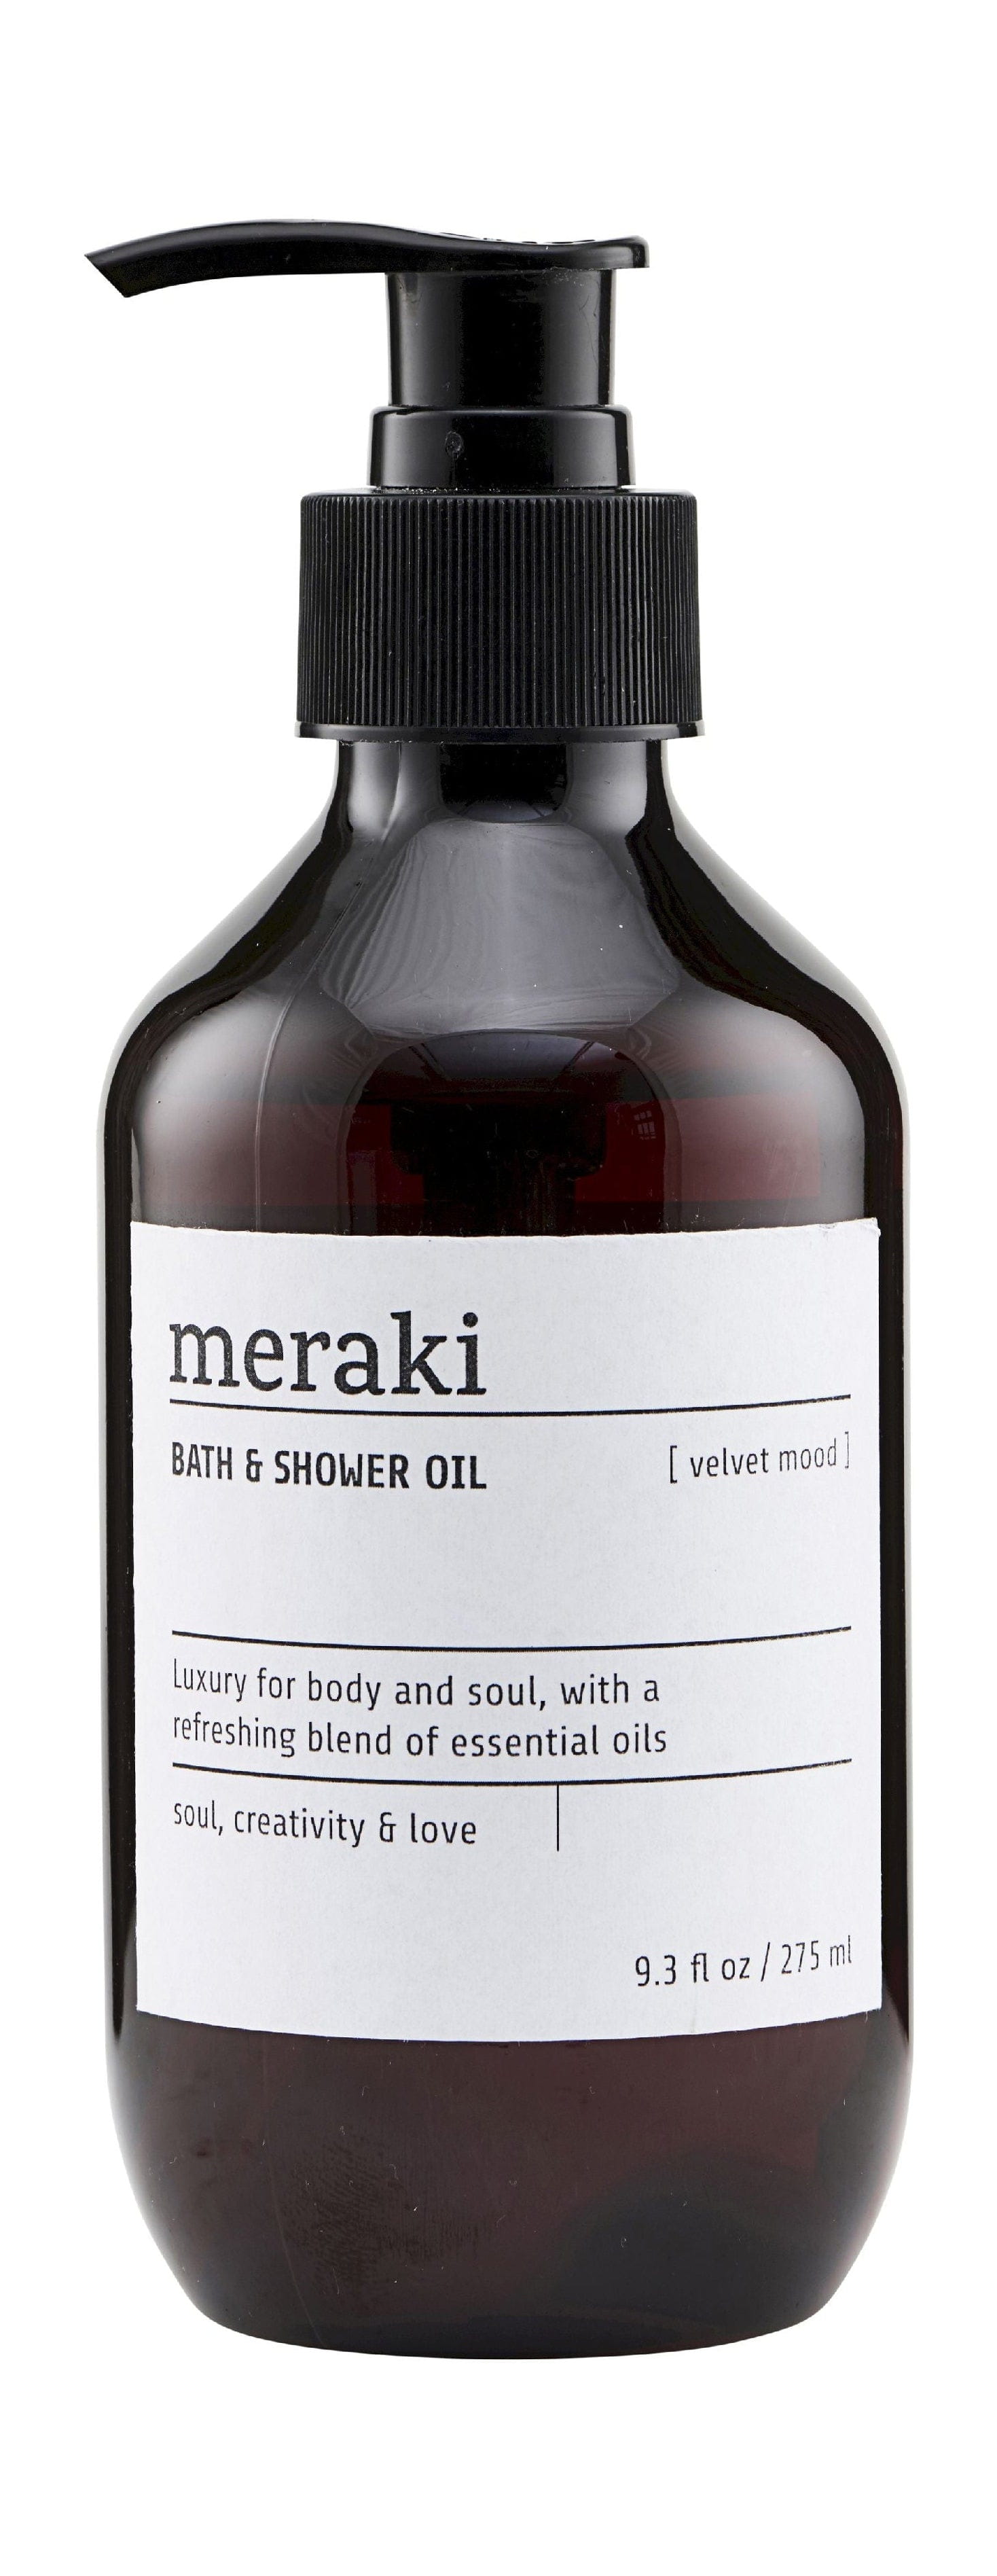 Meraki Bath & Shower Oil 275 Ml, Velvet Mood